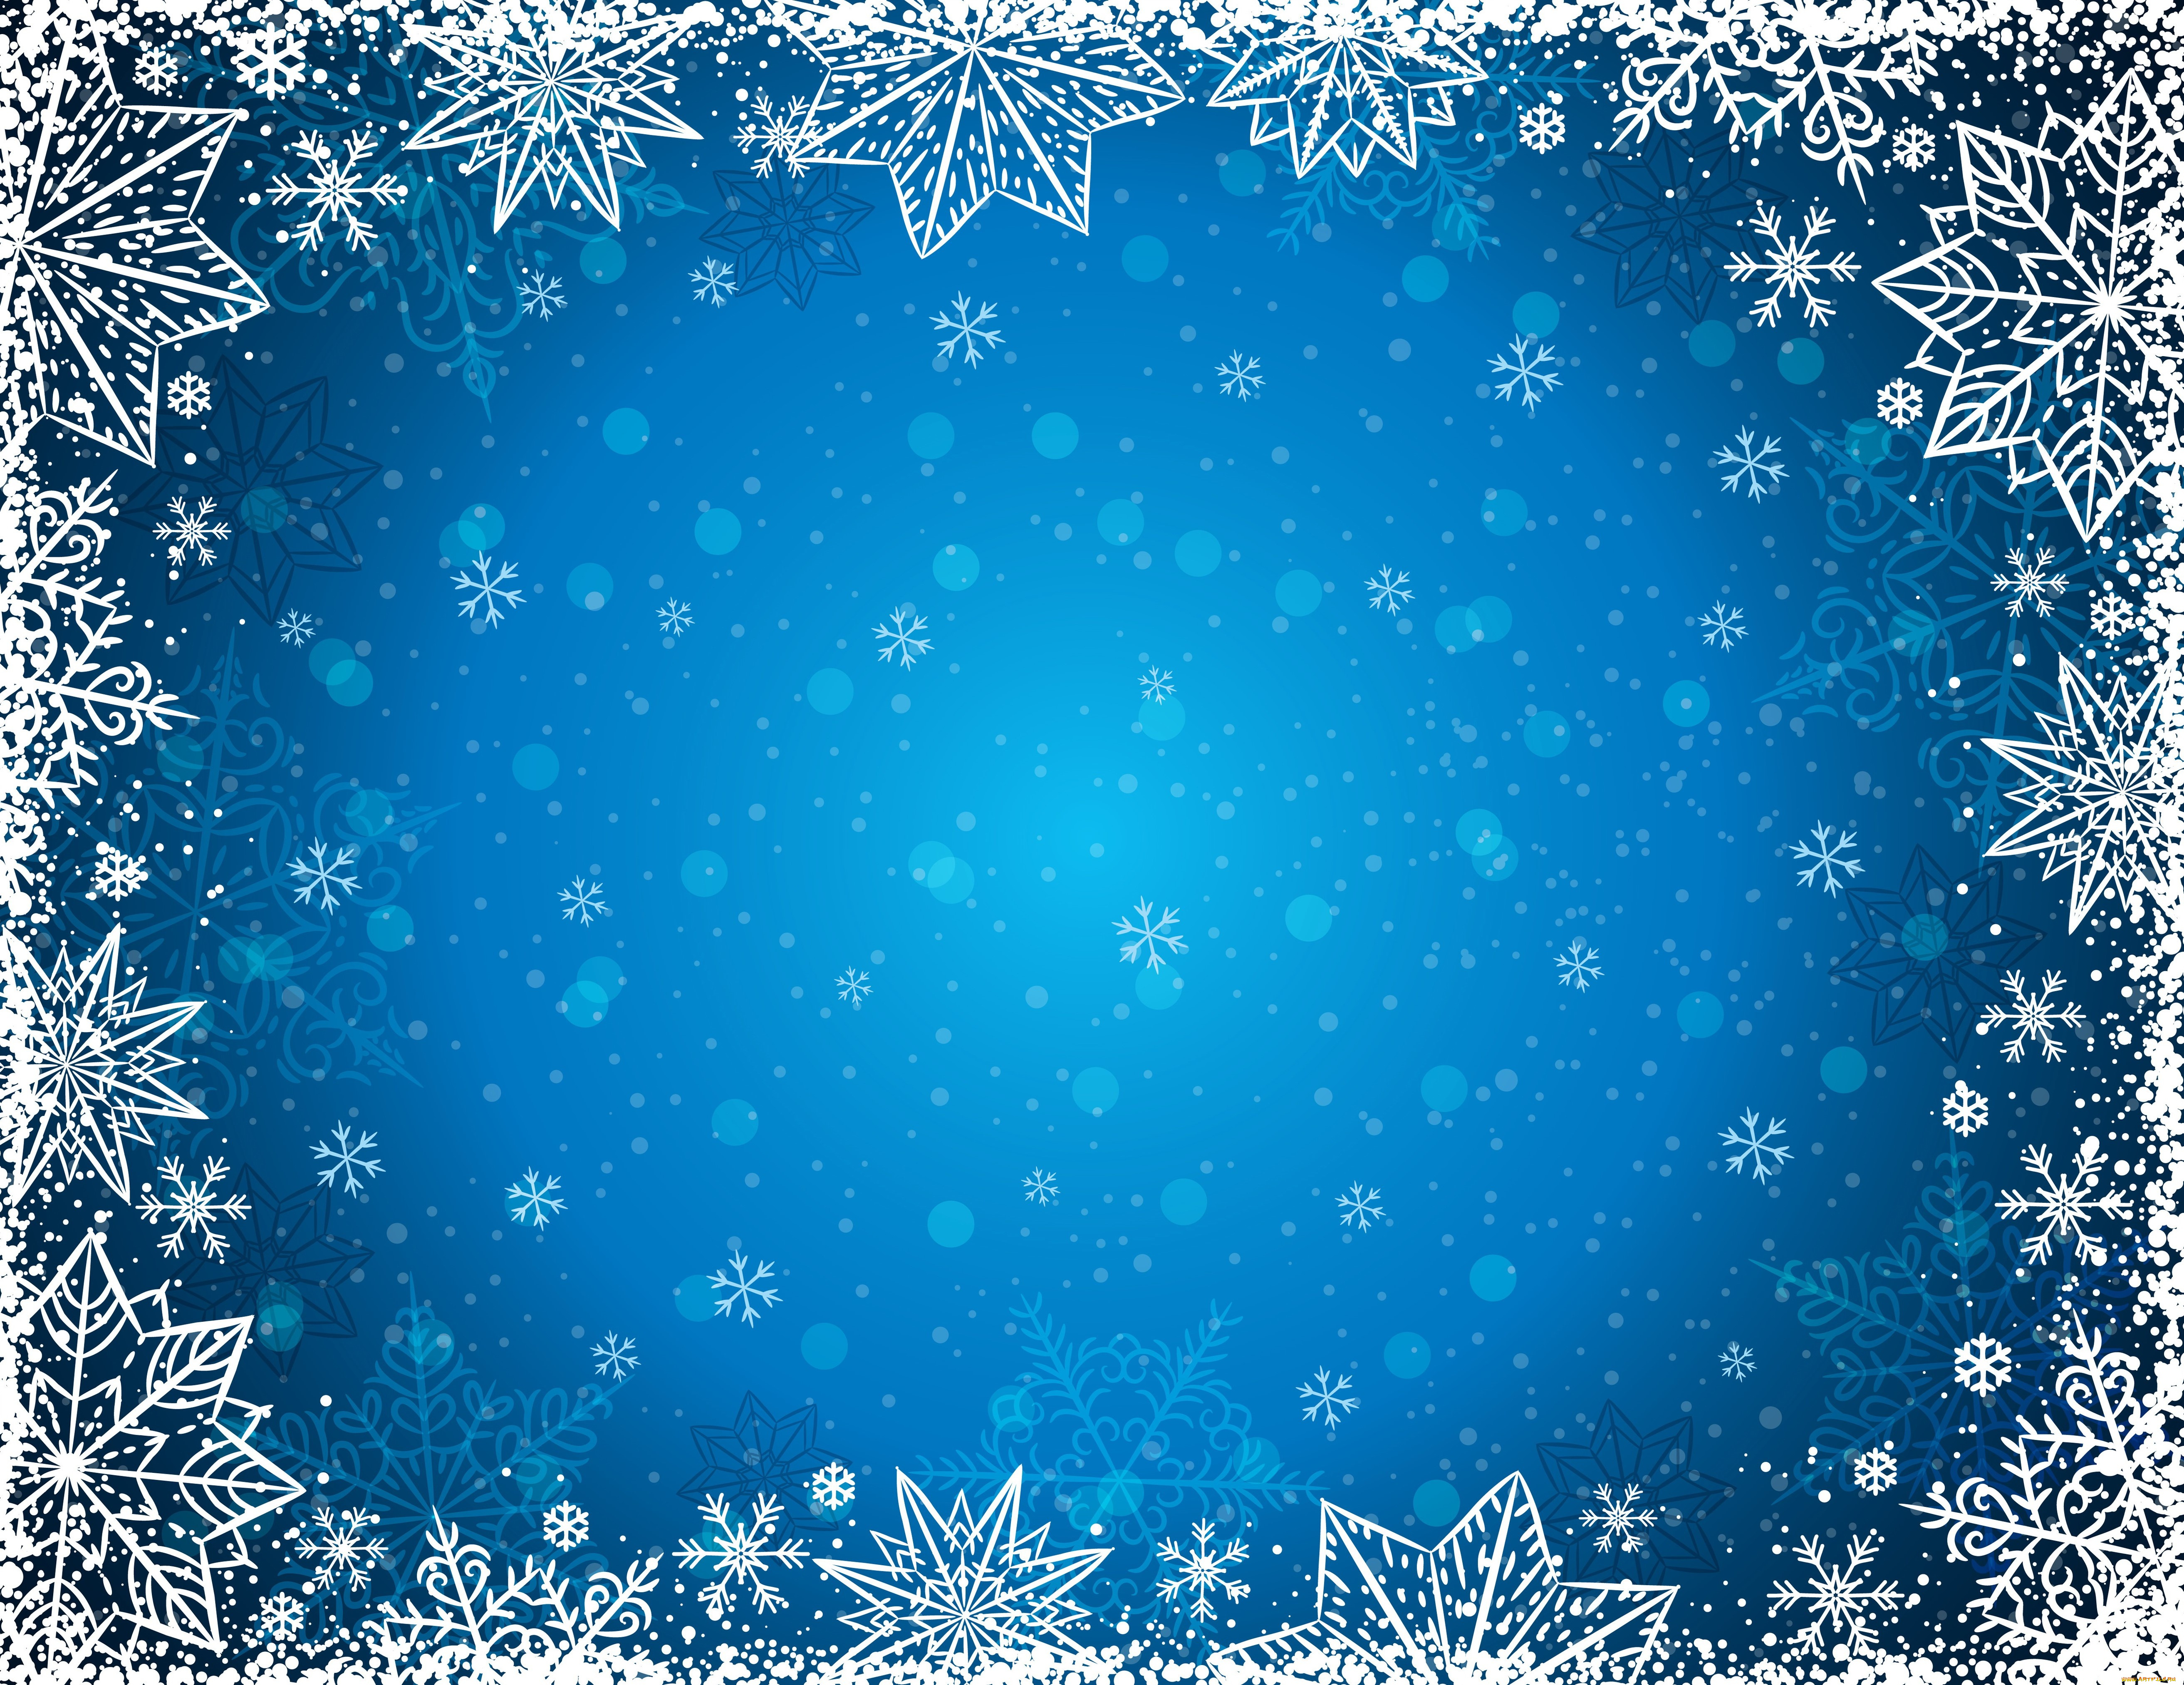 праздничные, снежинки, и, звёздочки, зима, снежинки, фон, winter, background, snowflakes